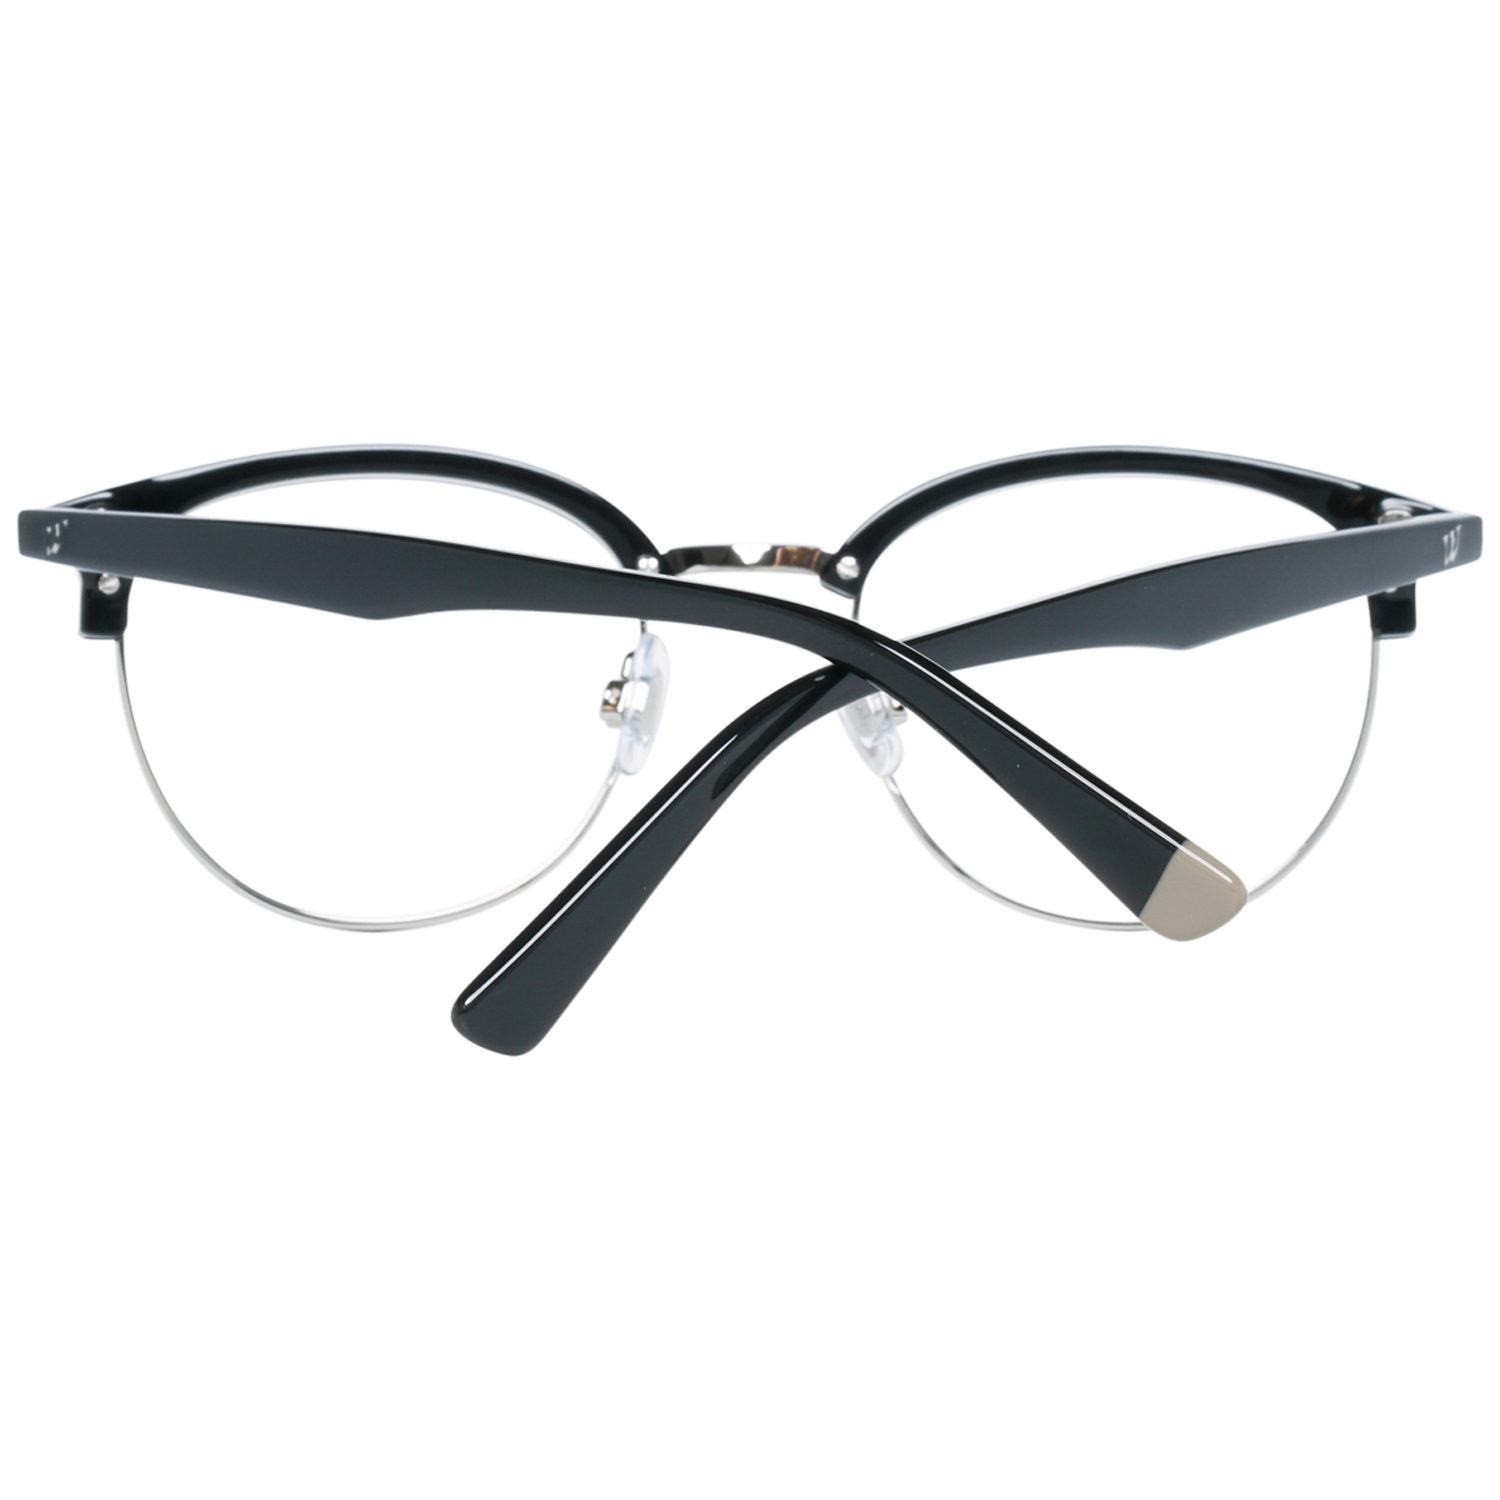 Web Frames Web Optical Frame WE5225 014 49 Eyeglasses Eyewear UK USA Australia 